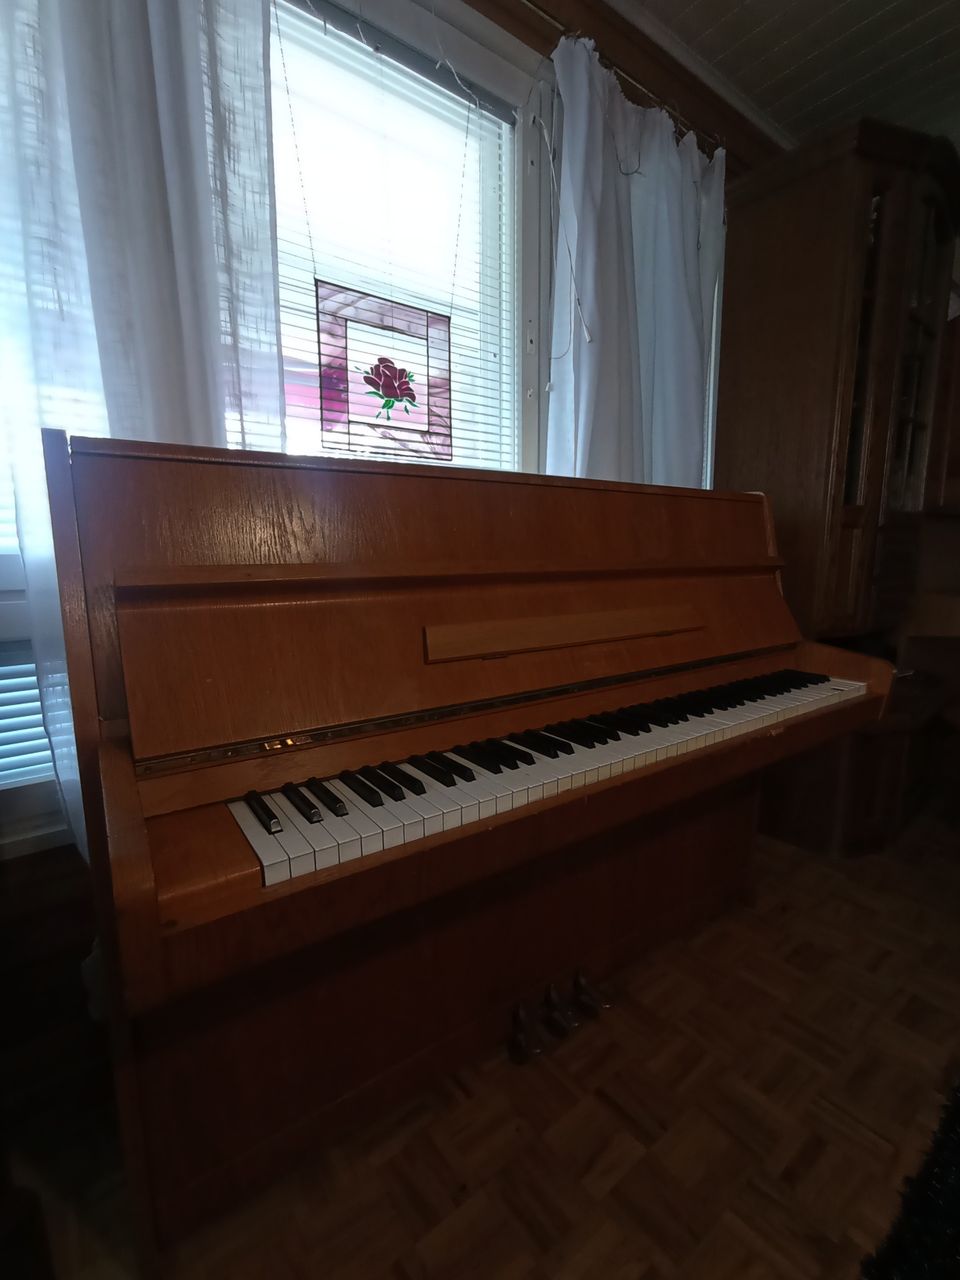 Annetaa Rönisch-piano.